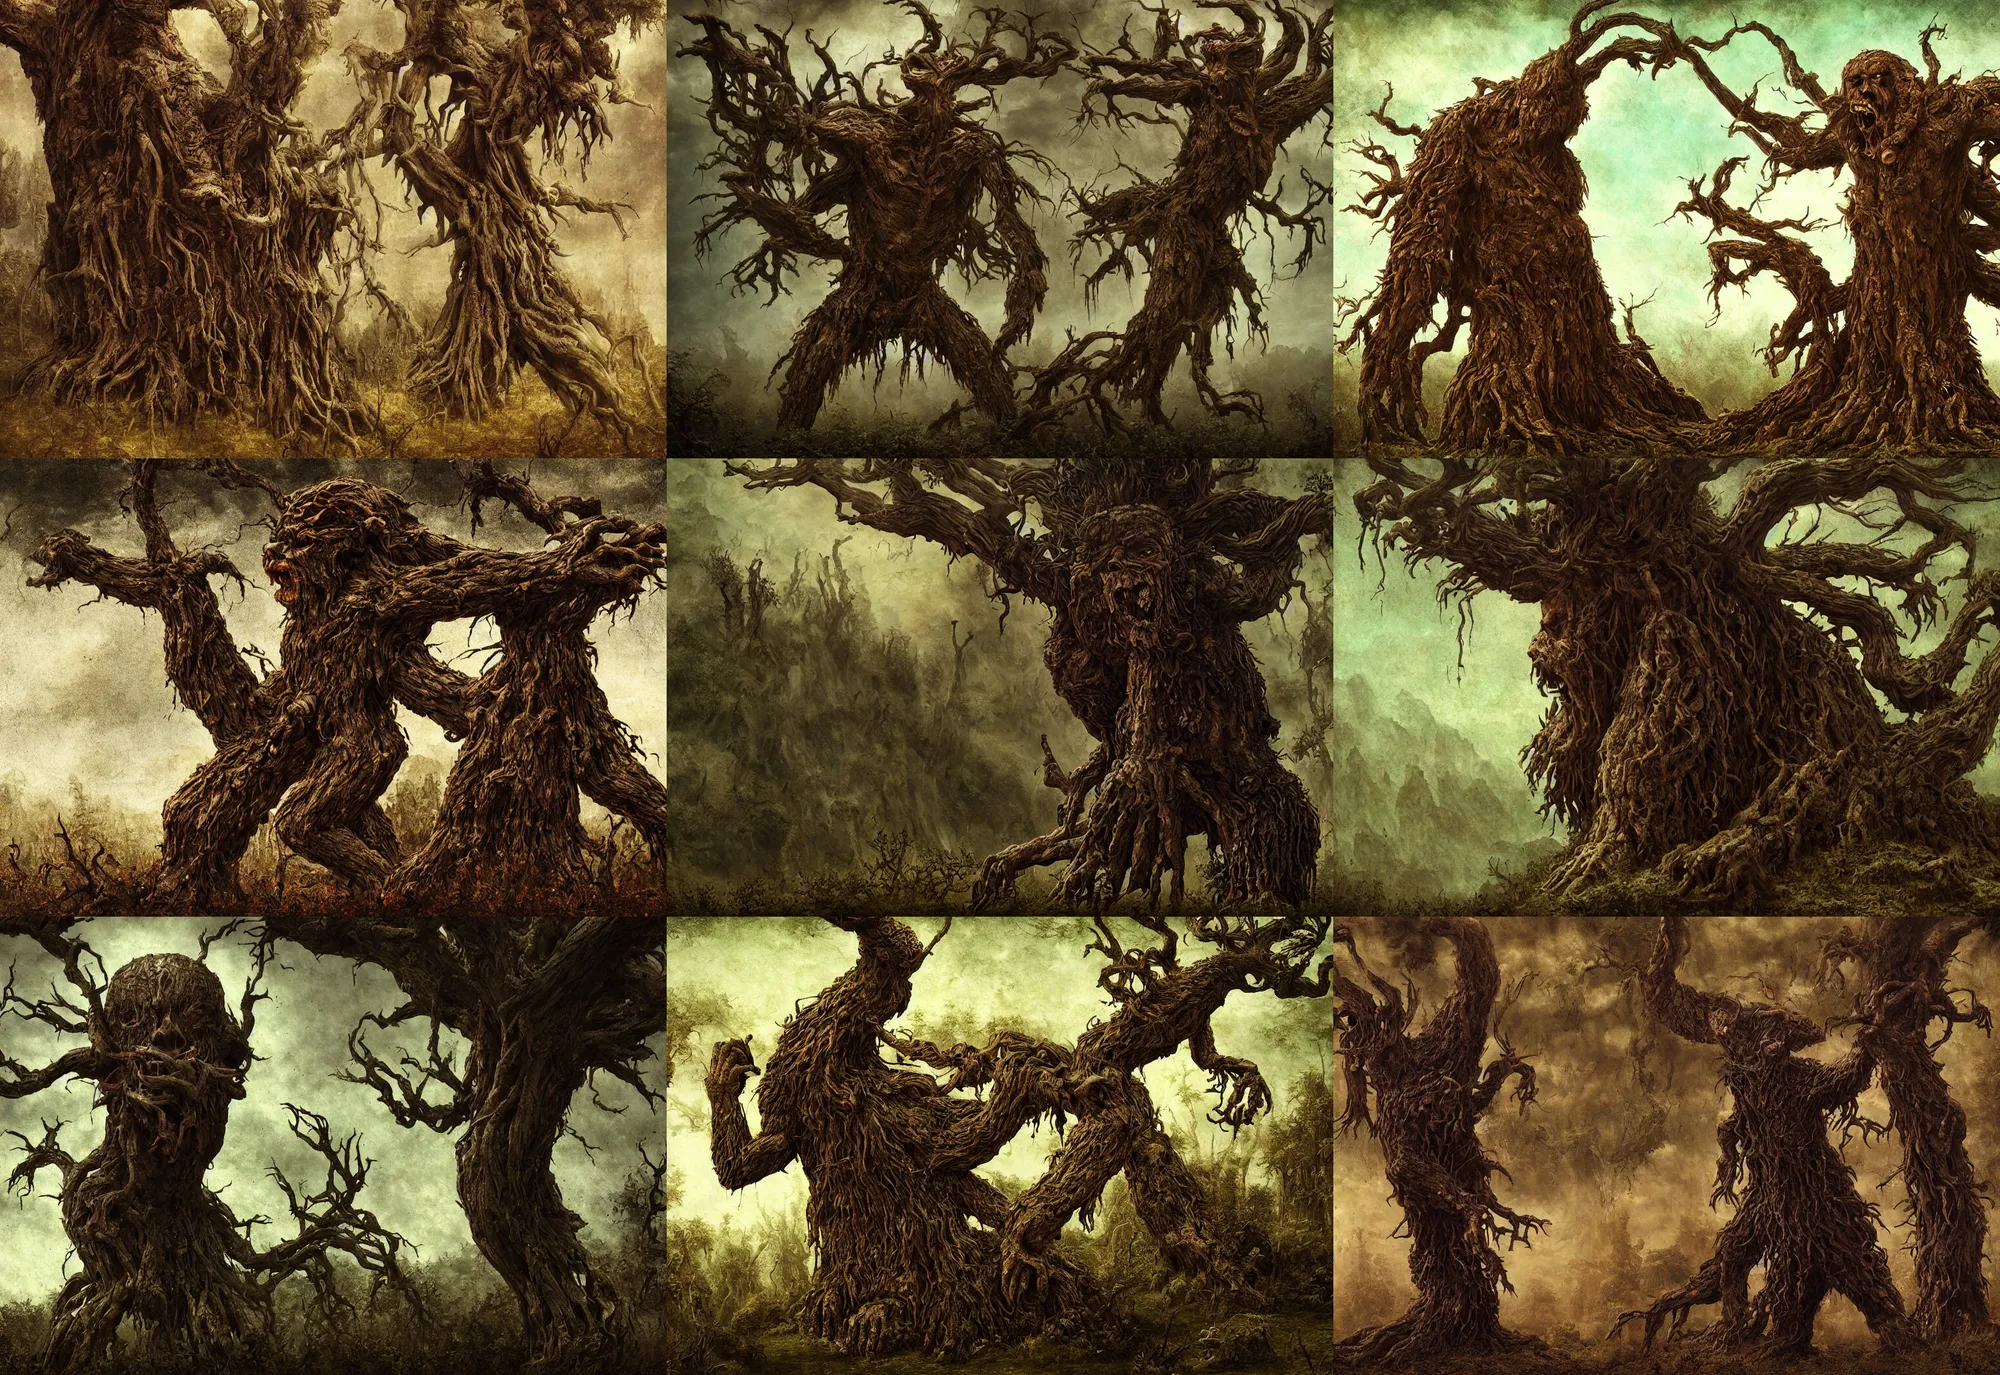 Prompt: vengeful tree monster, decayed, deforested, evil, dark fantasy, highly detailed, smooth, matte painting, by leonardo da vinci, frank franzzeta, artistic render, vaporwave